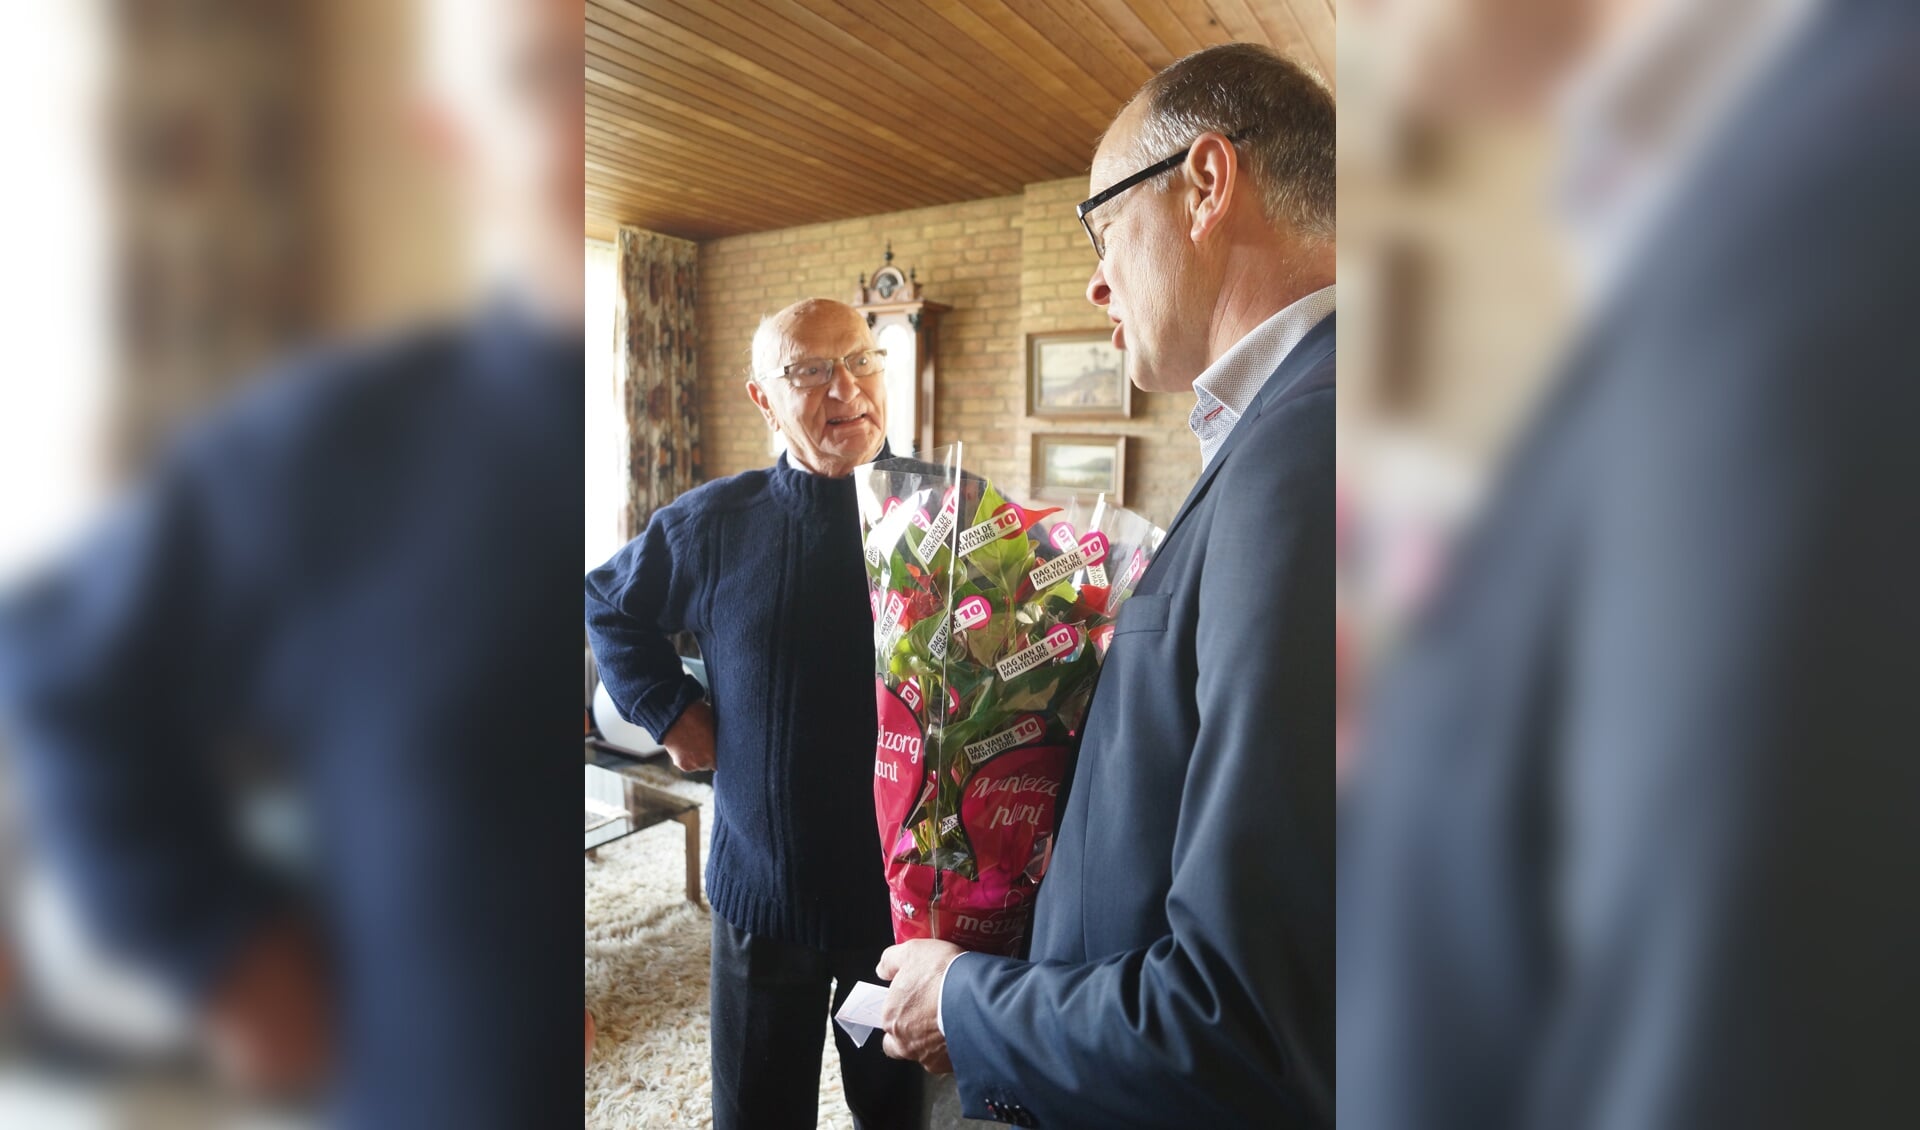 De heer Van Toor is verrast dat wethouder Geert Hendriks hem een bloemetje komt brengen.